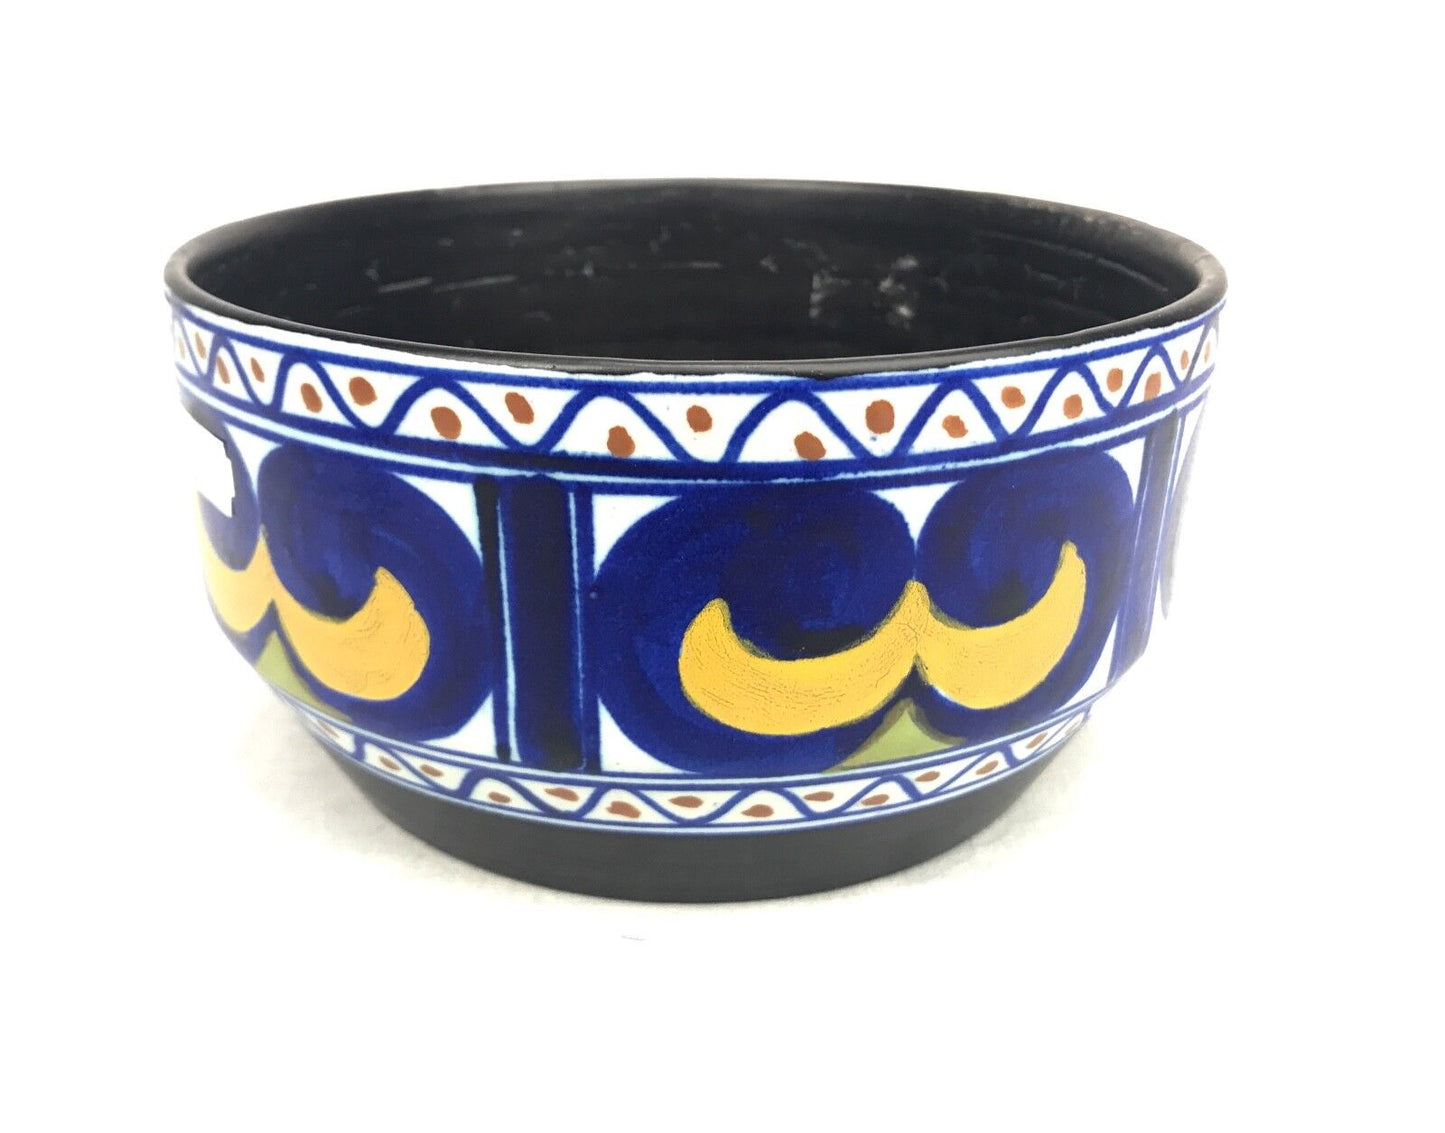 Gouda Pottery Bowl / Vase / Centre Piece / Art Deco 1920's / Blue / Yellow